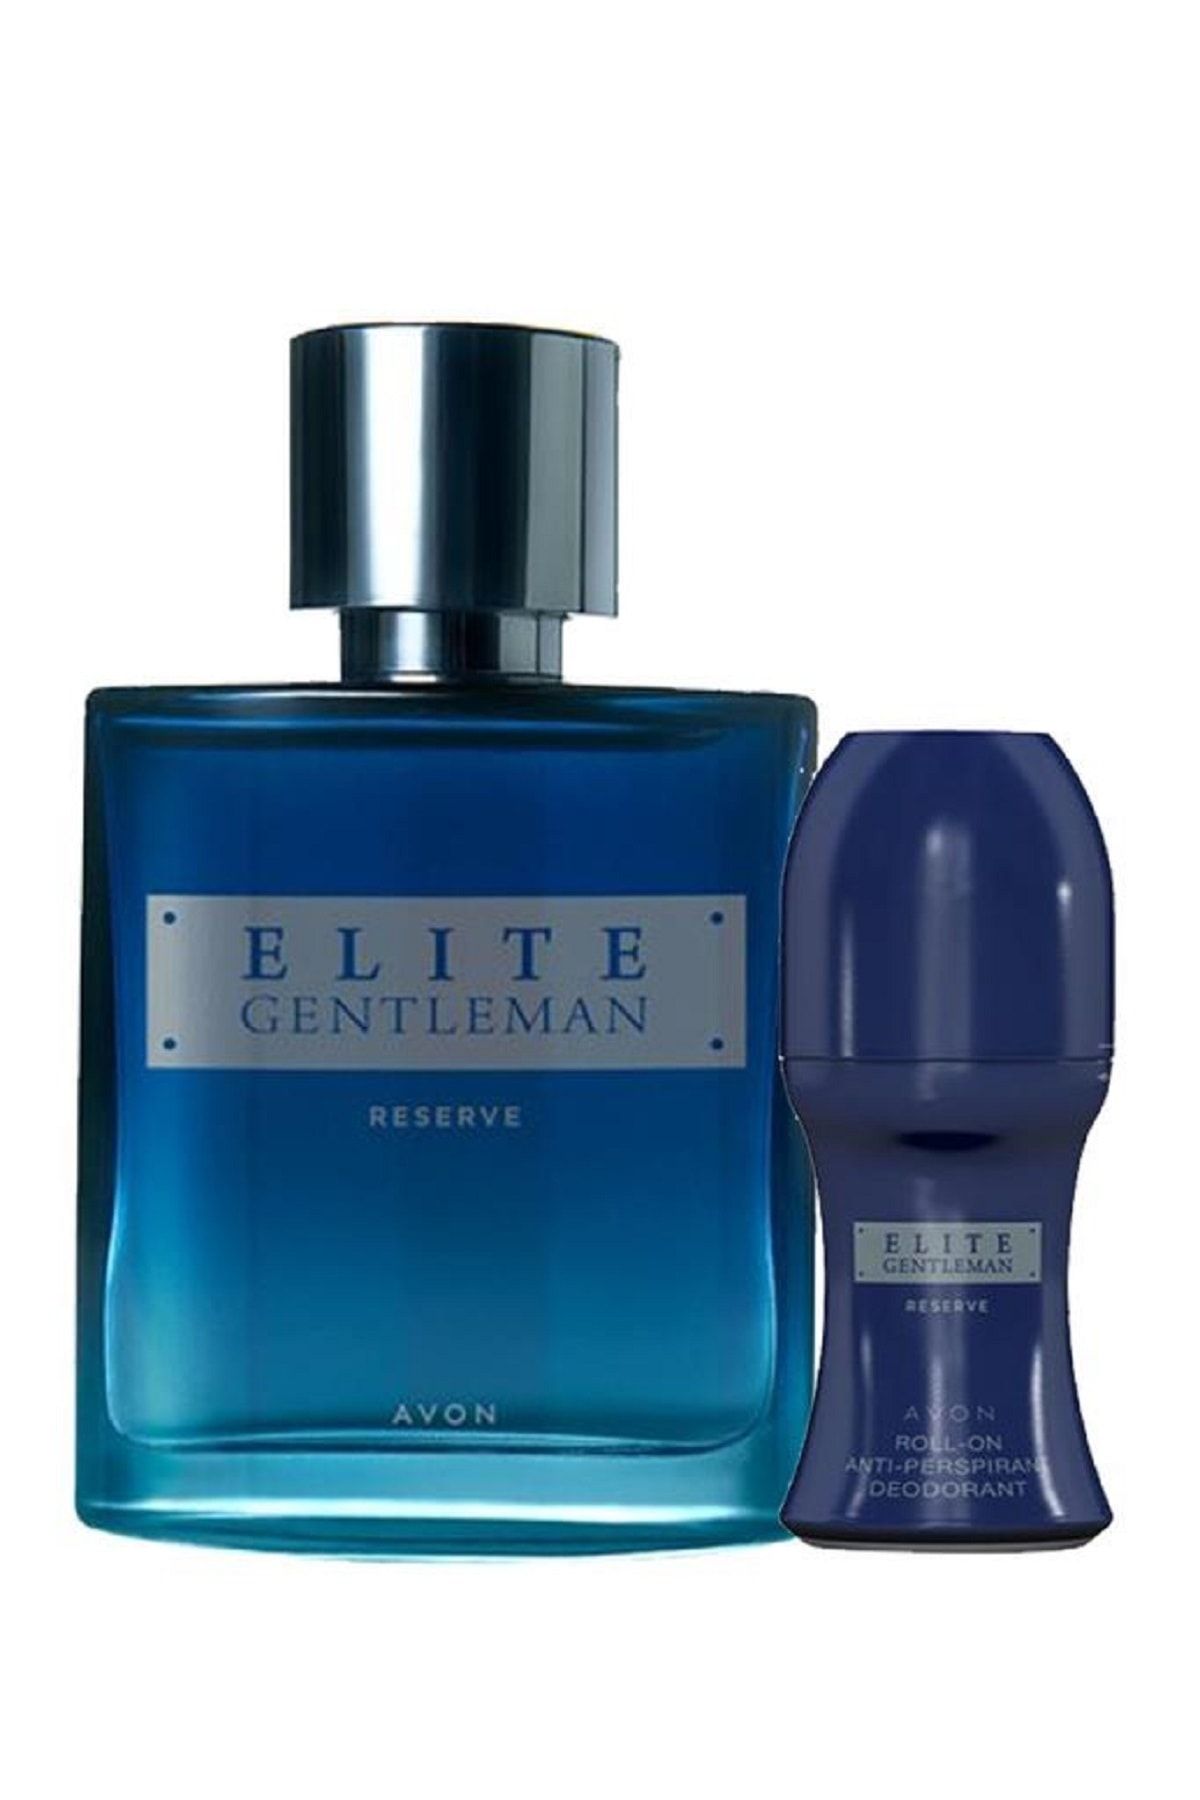 Туалетная вода elite. Avon Elite Gentleman Reserve. Мужская туалетная вода Elite Gentleman - EDT. Эйвон Elite Gentleman + дезодорант. Духи Elite Gentleman синие.